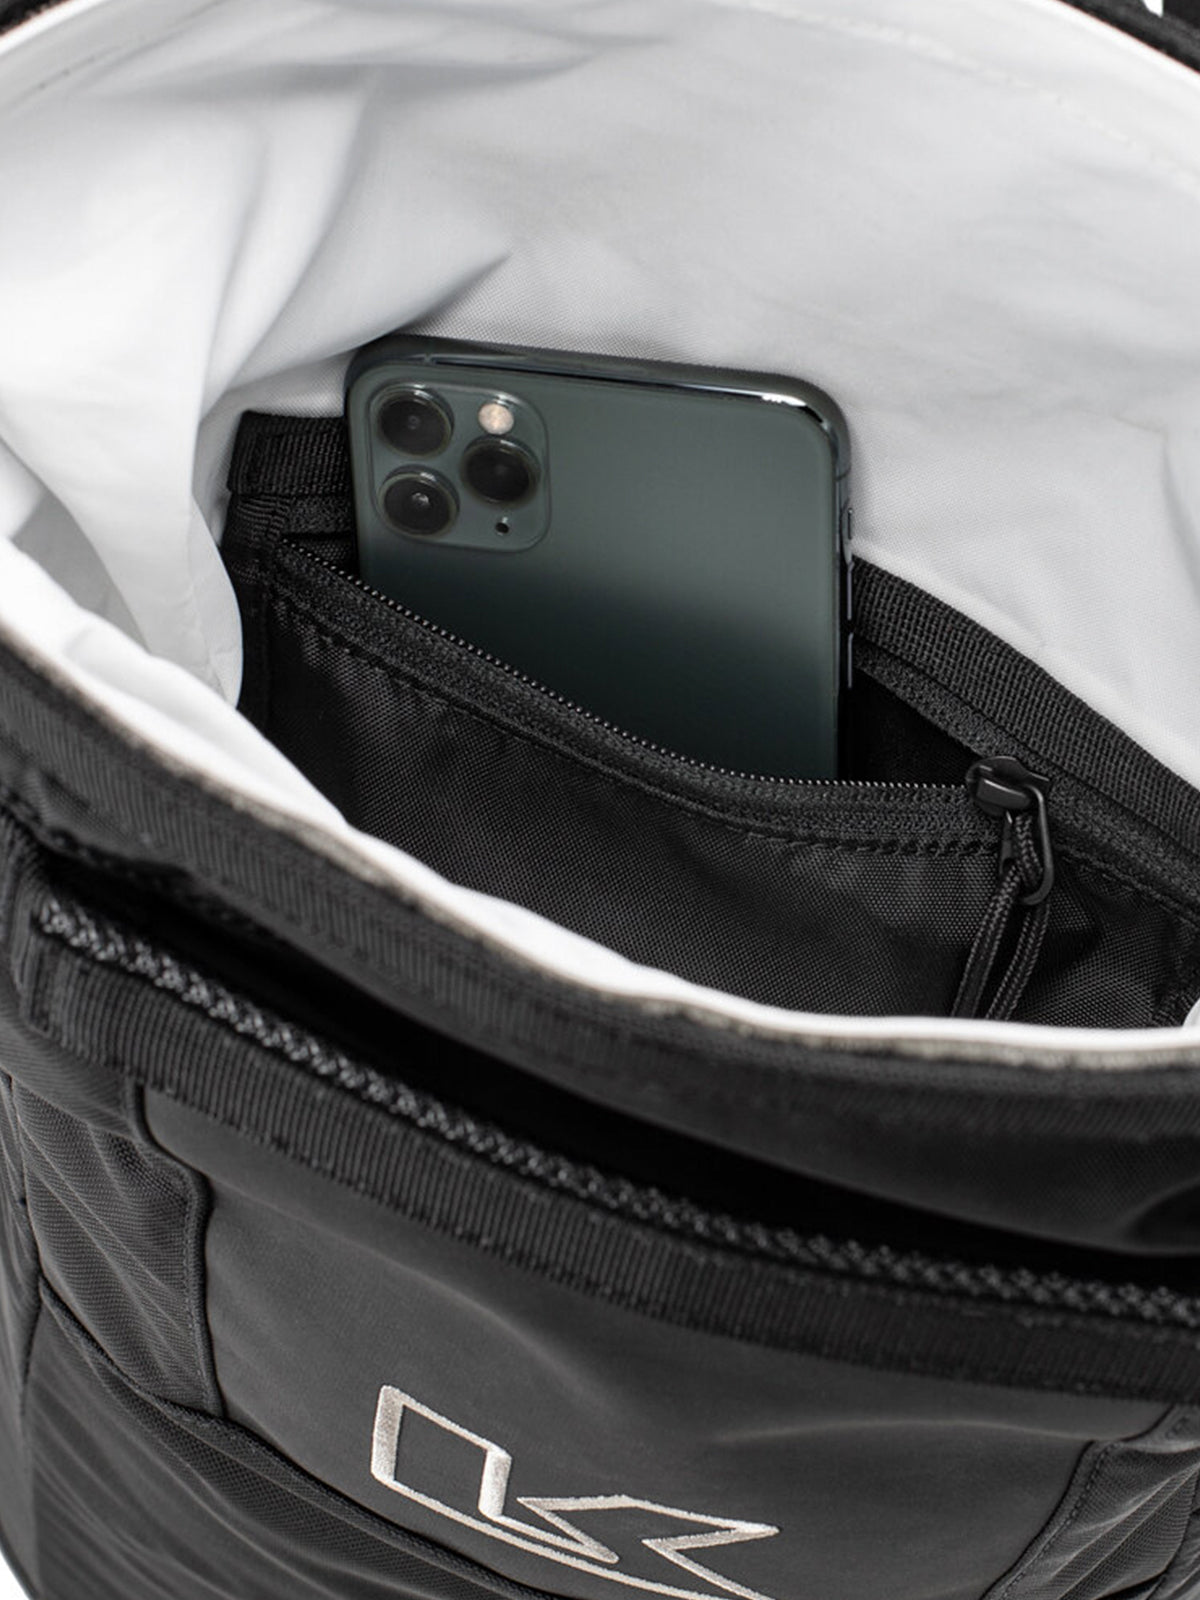 Kriega R16 Backpack internal pocket